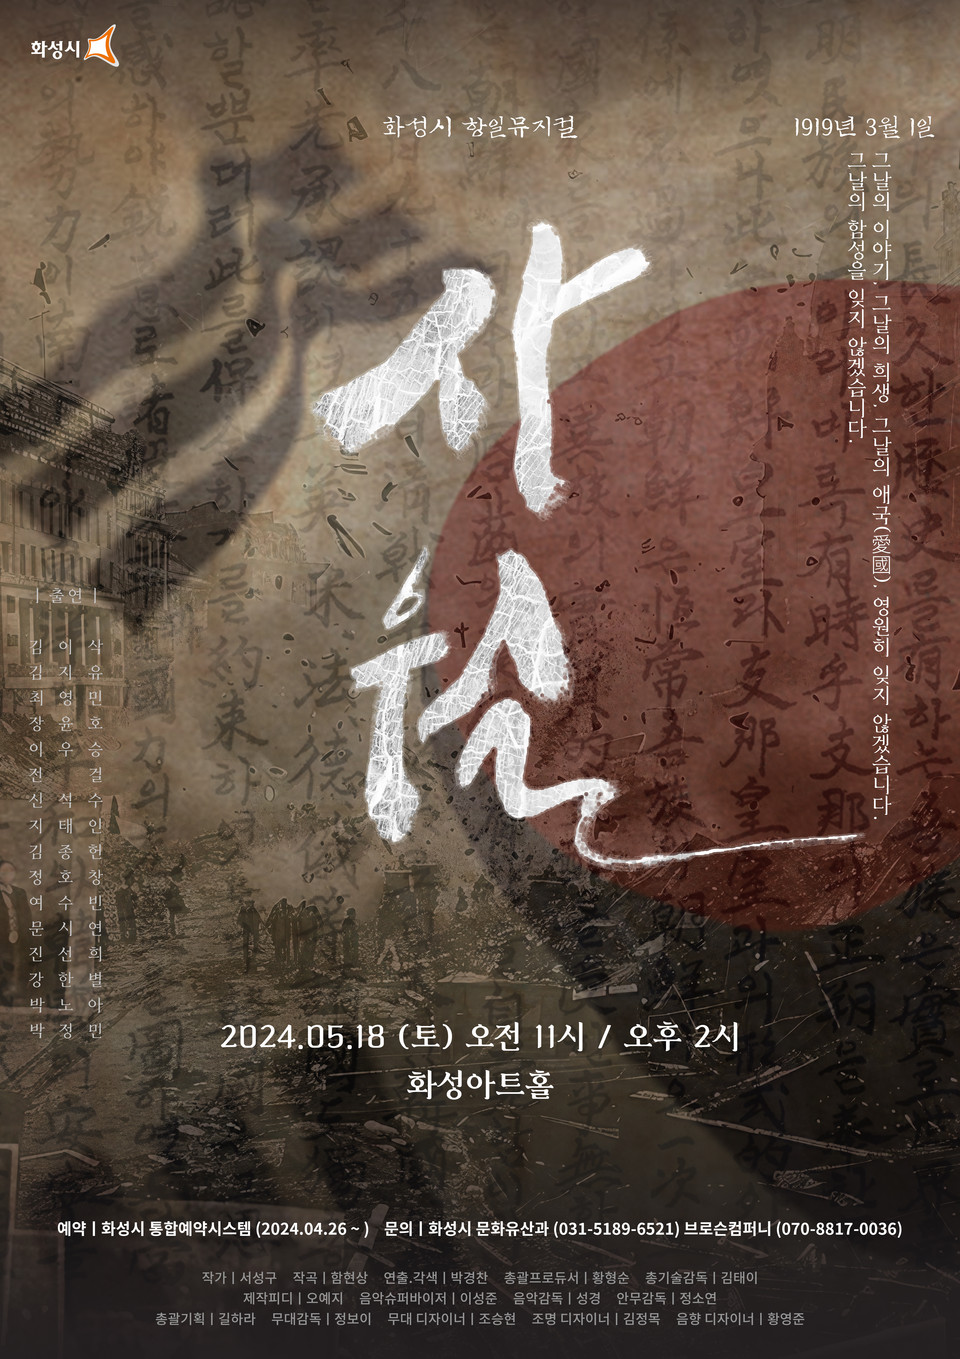 ▲ 화성시, 항일뮤지컬 ‘사월’ 공연 5월 18일 화성아트홀에서 개최